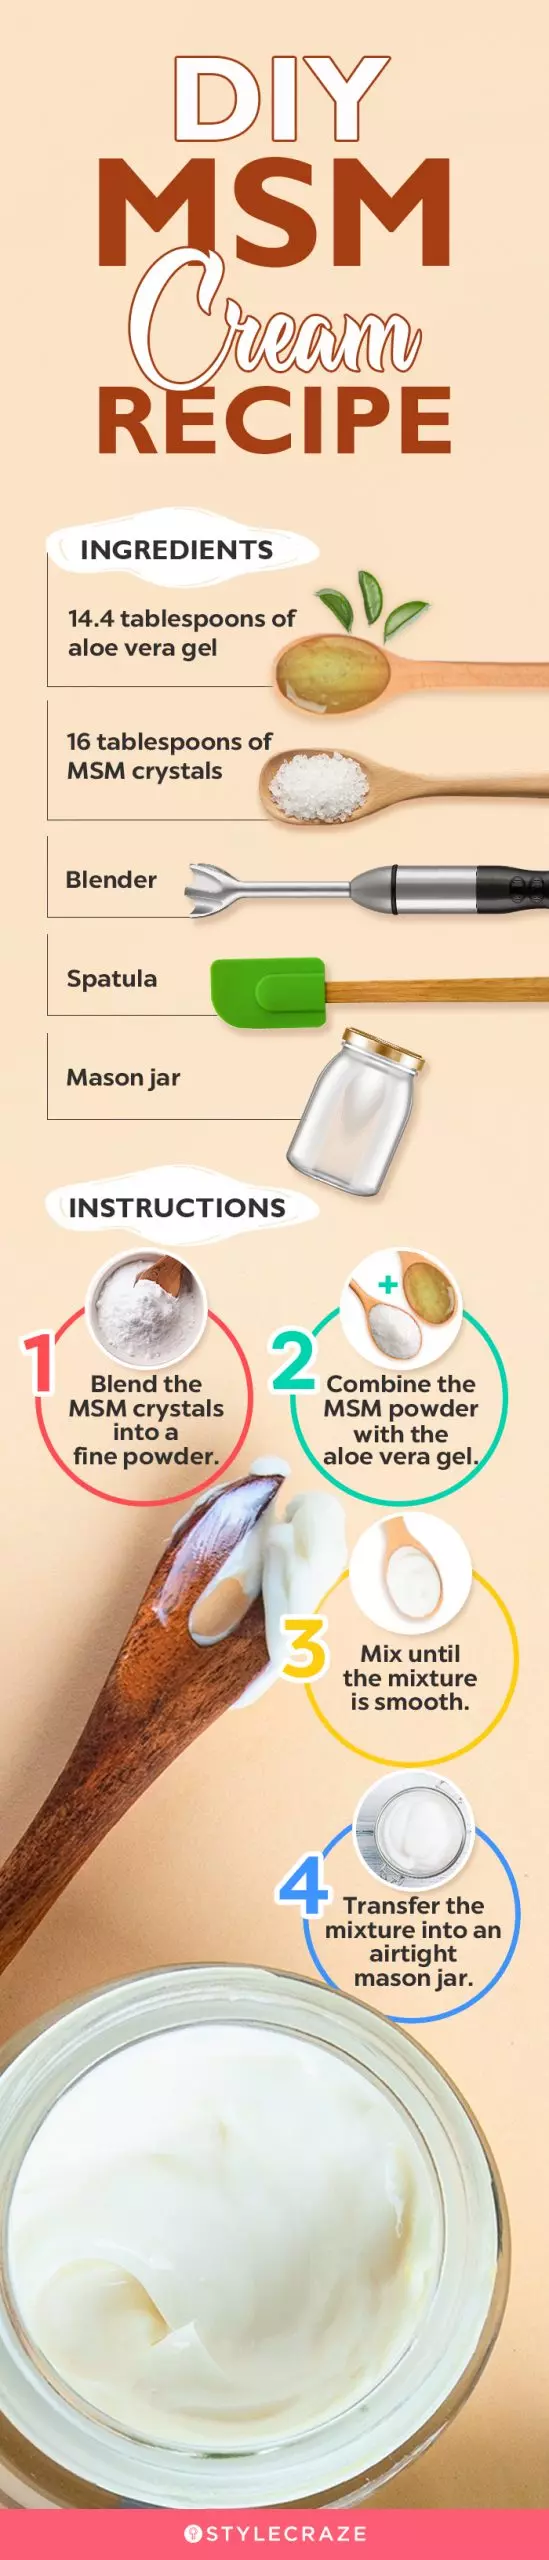 diy msm cream recipe (infographic)